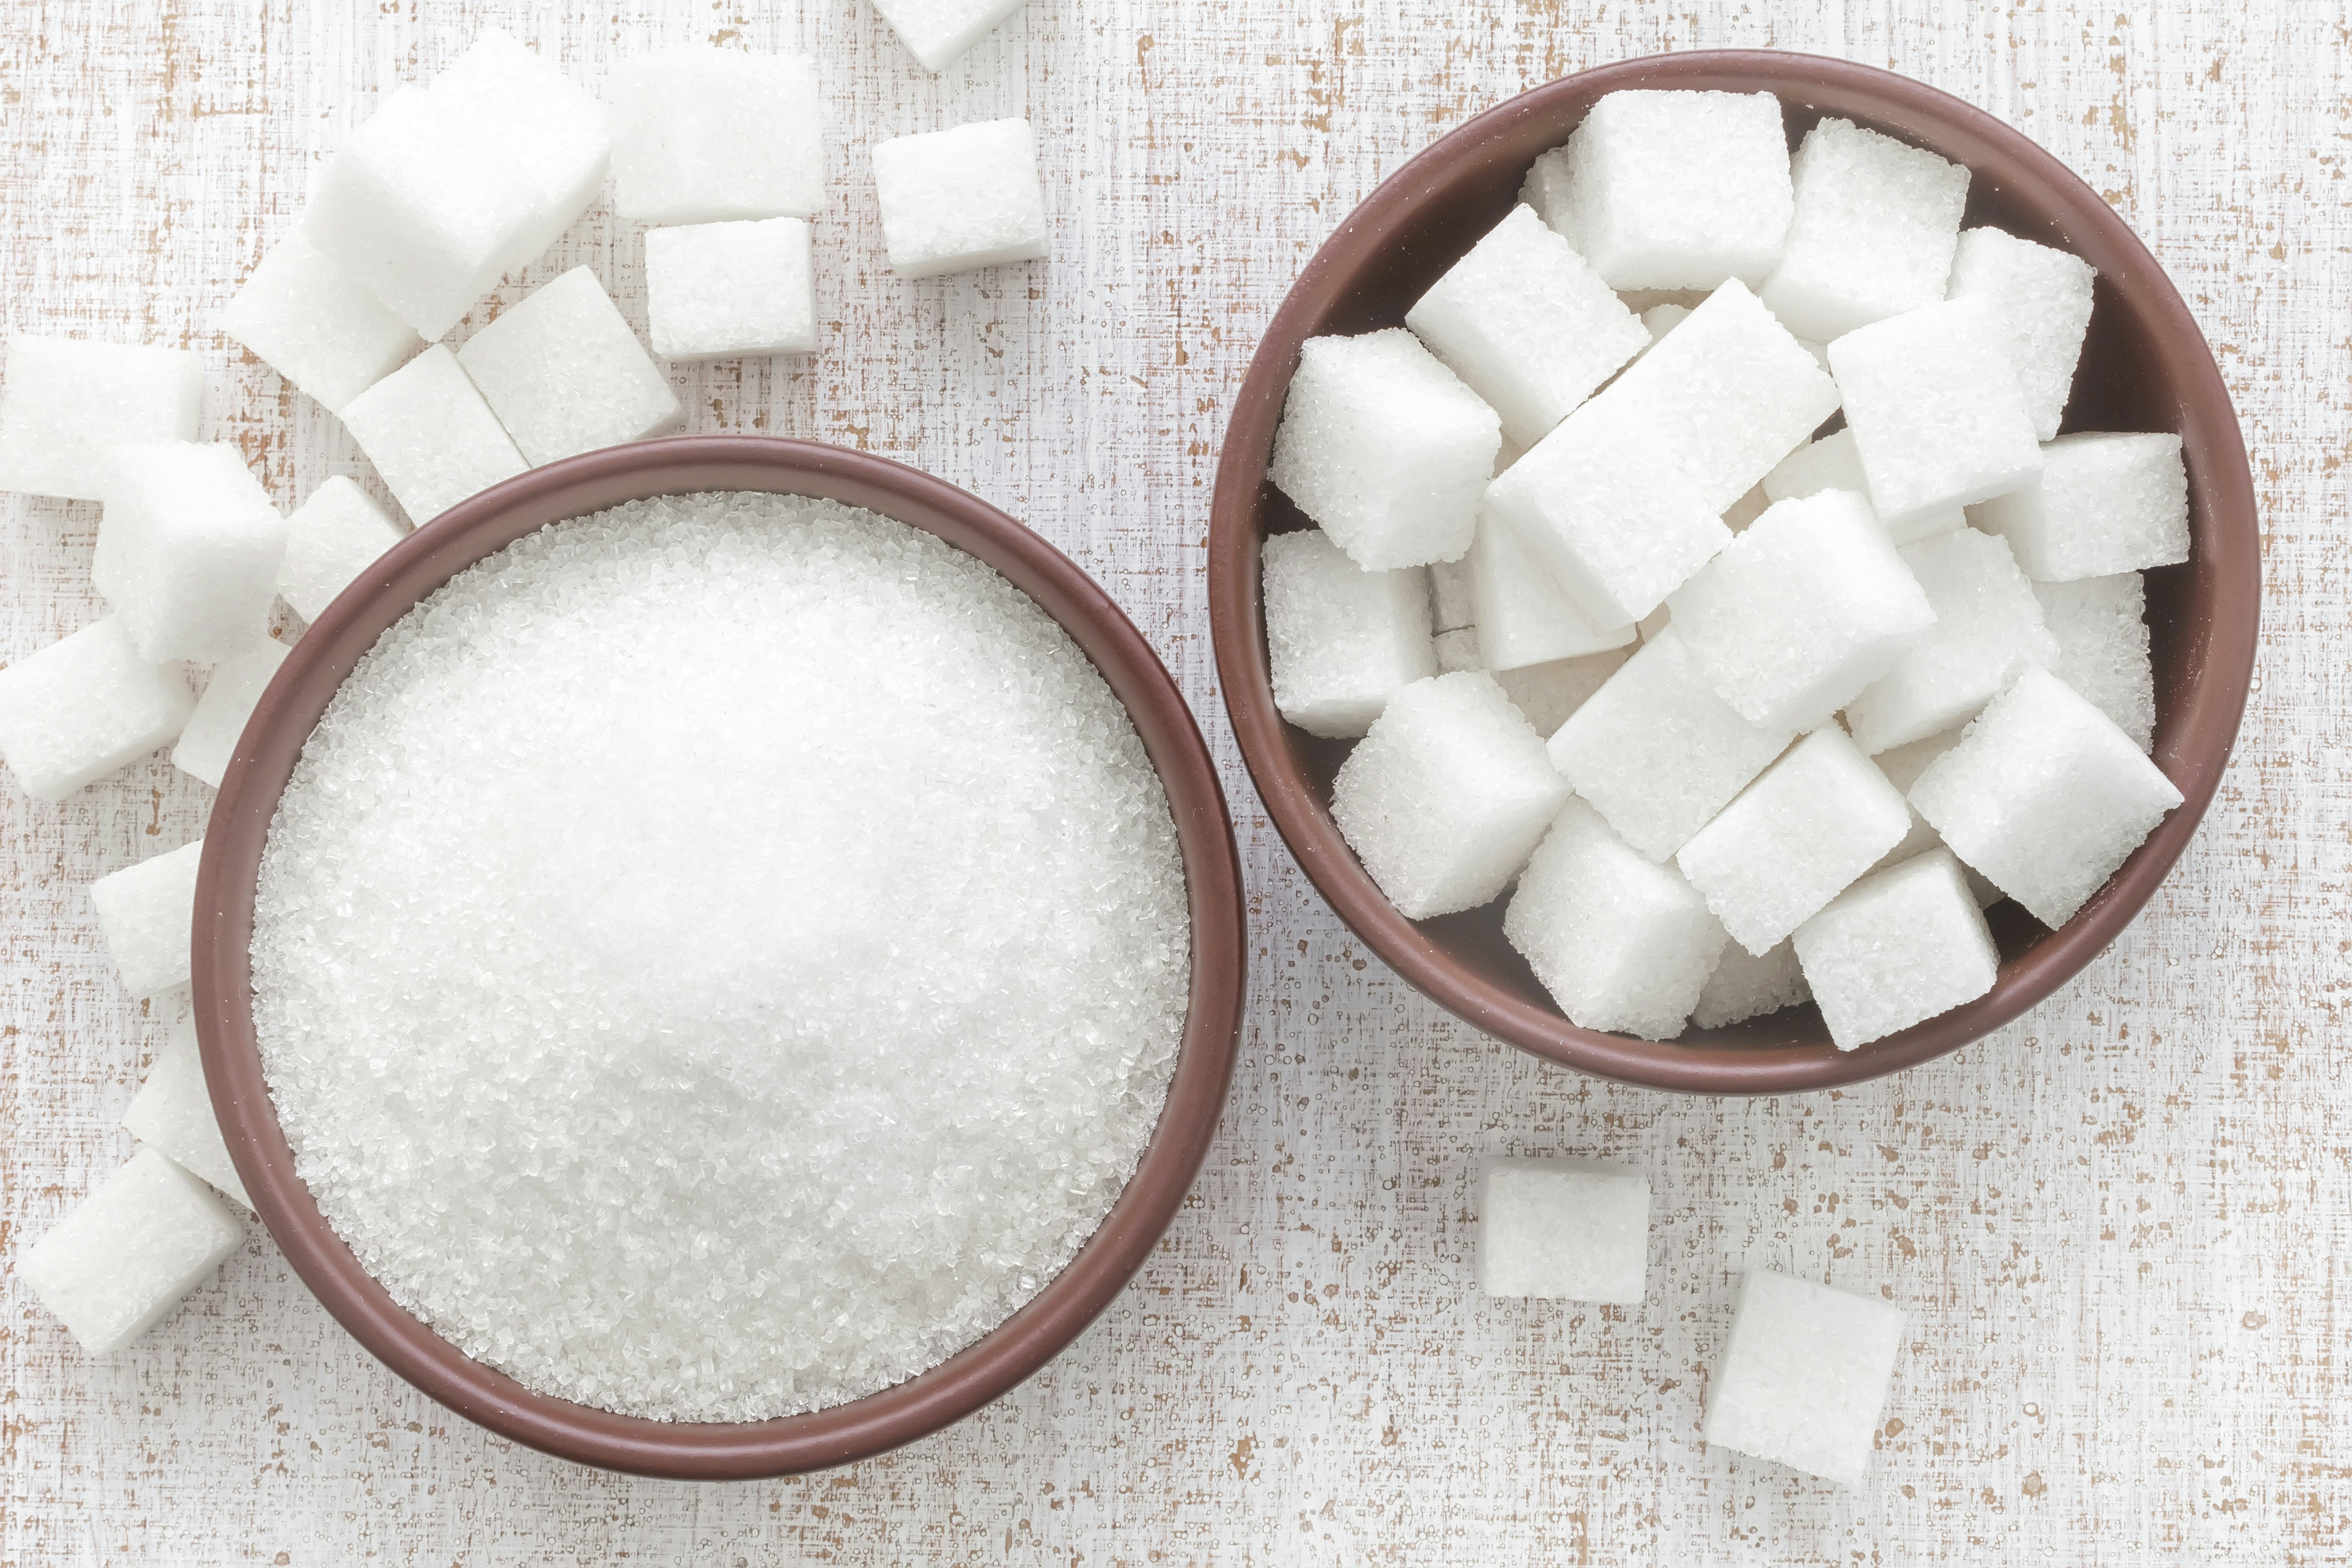 België zet suikerbelasting niet door